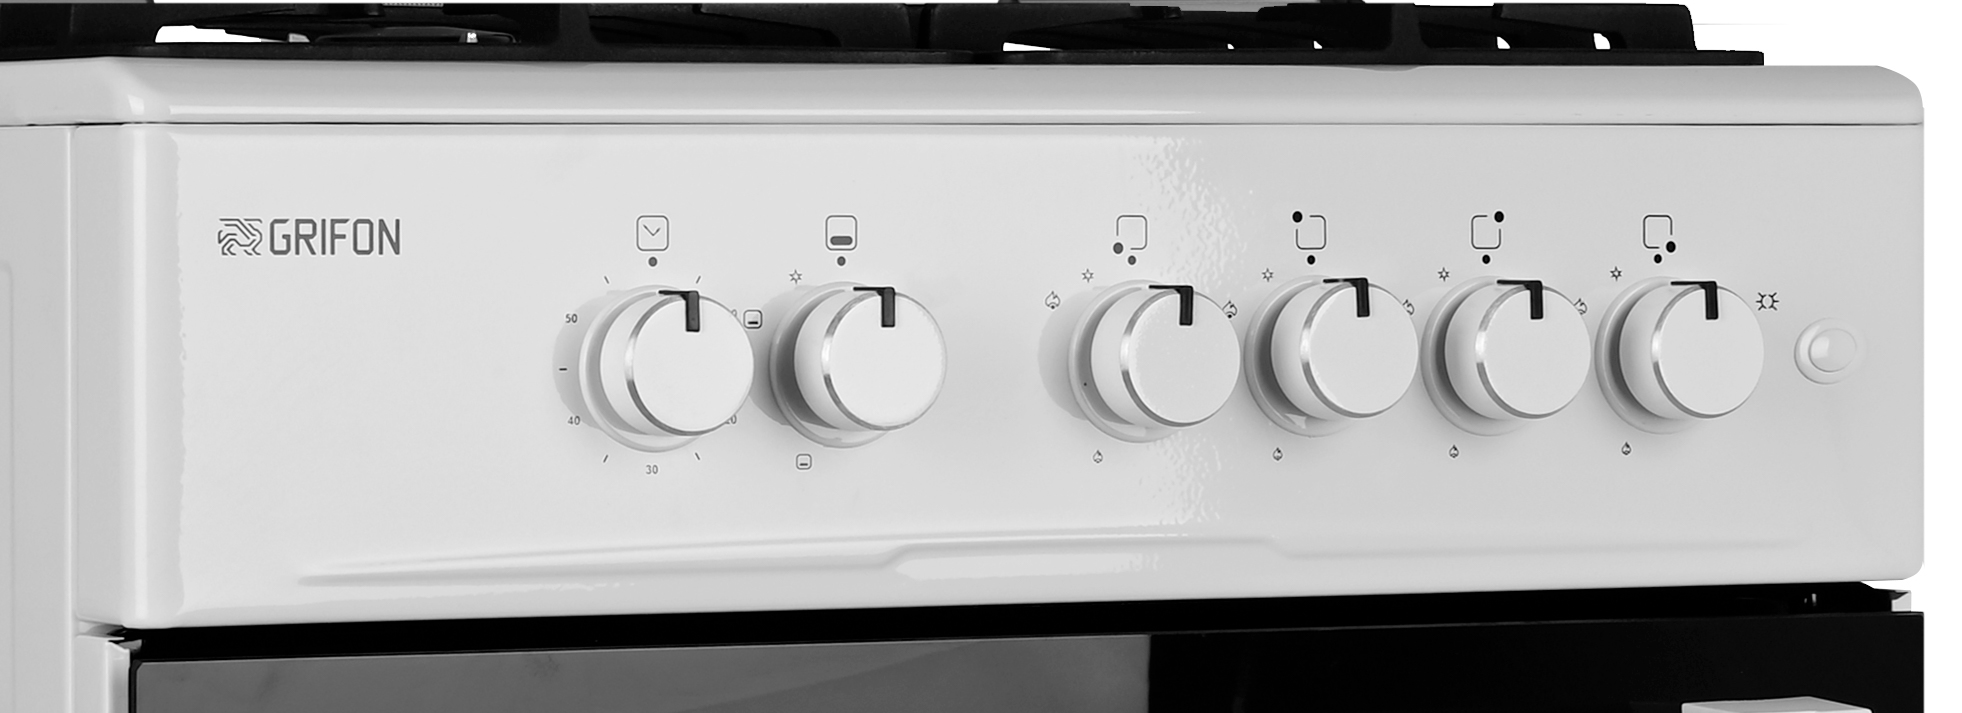 Кухонна плита Grifon G643W-CAWB3 характеристики - фотографія 7